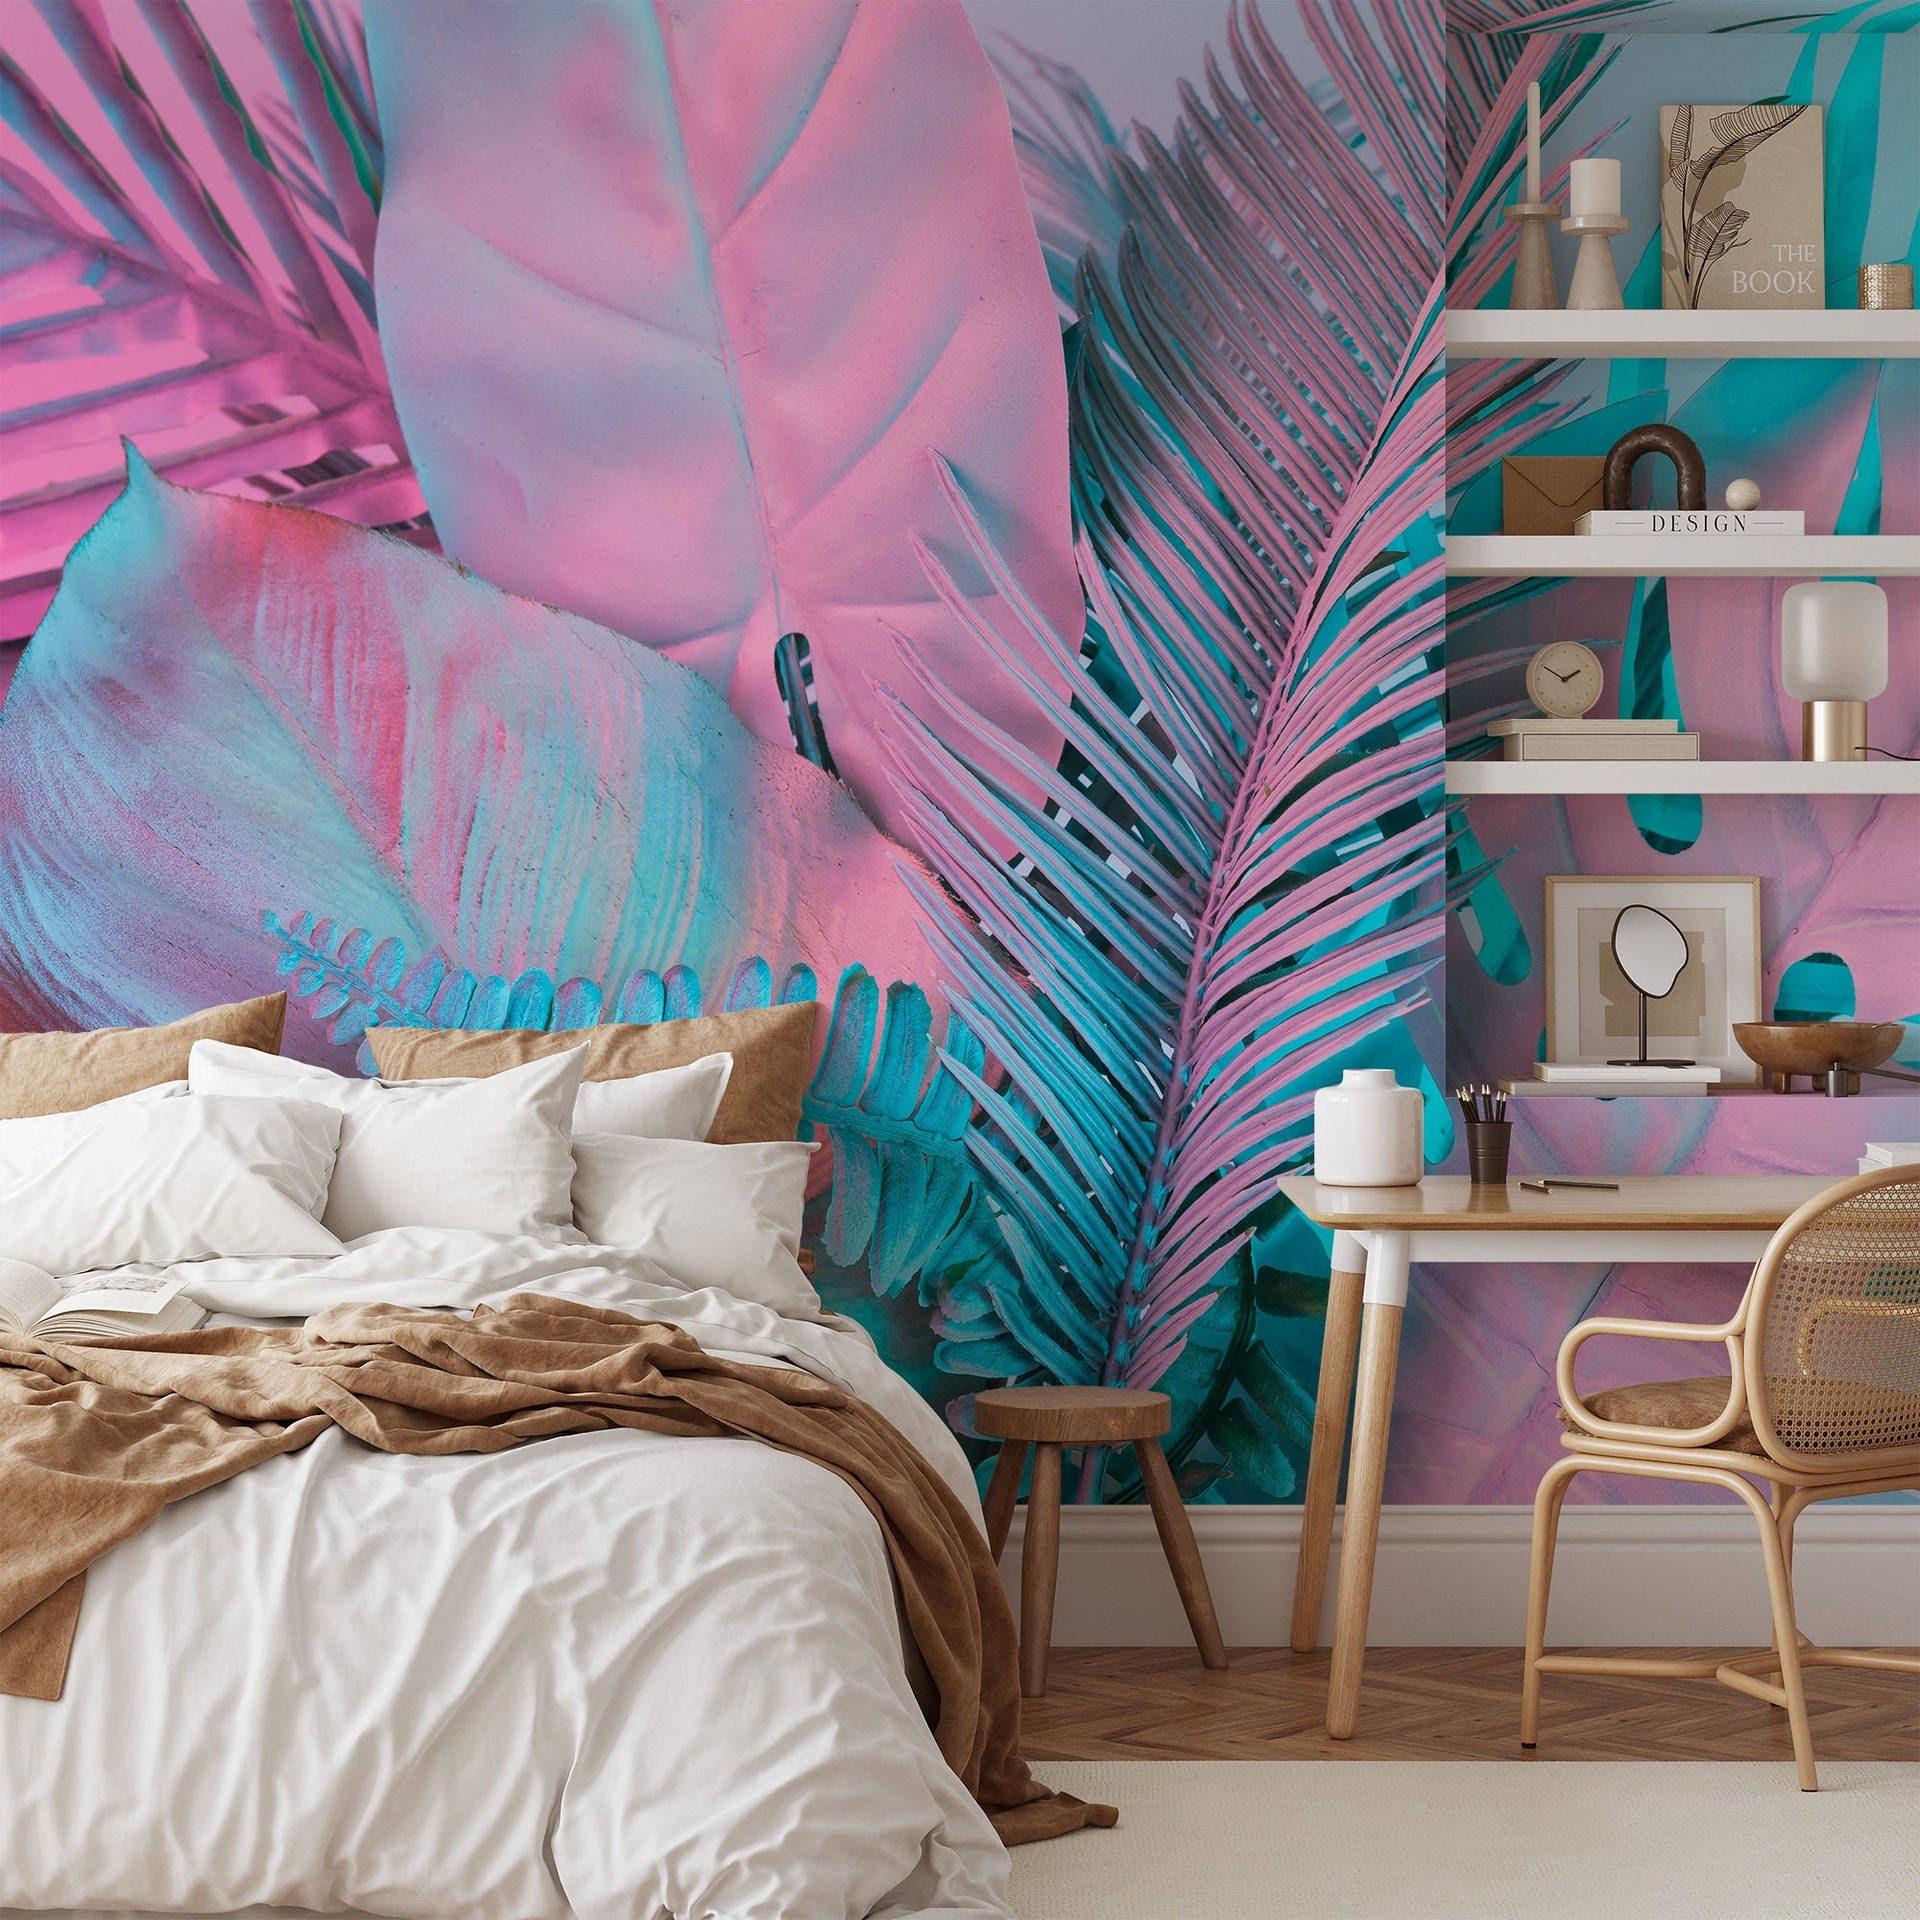 Et soveværelse med en pink og blå væg Wallpaper